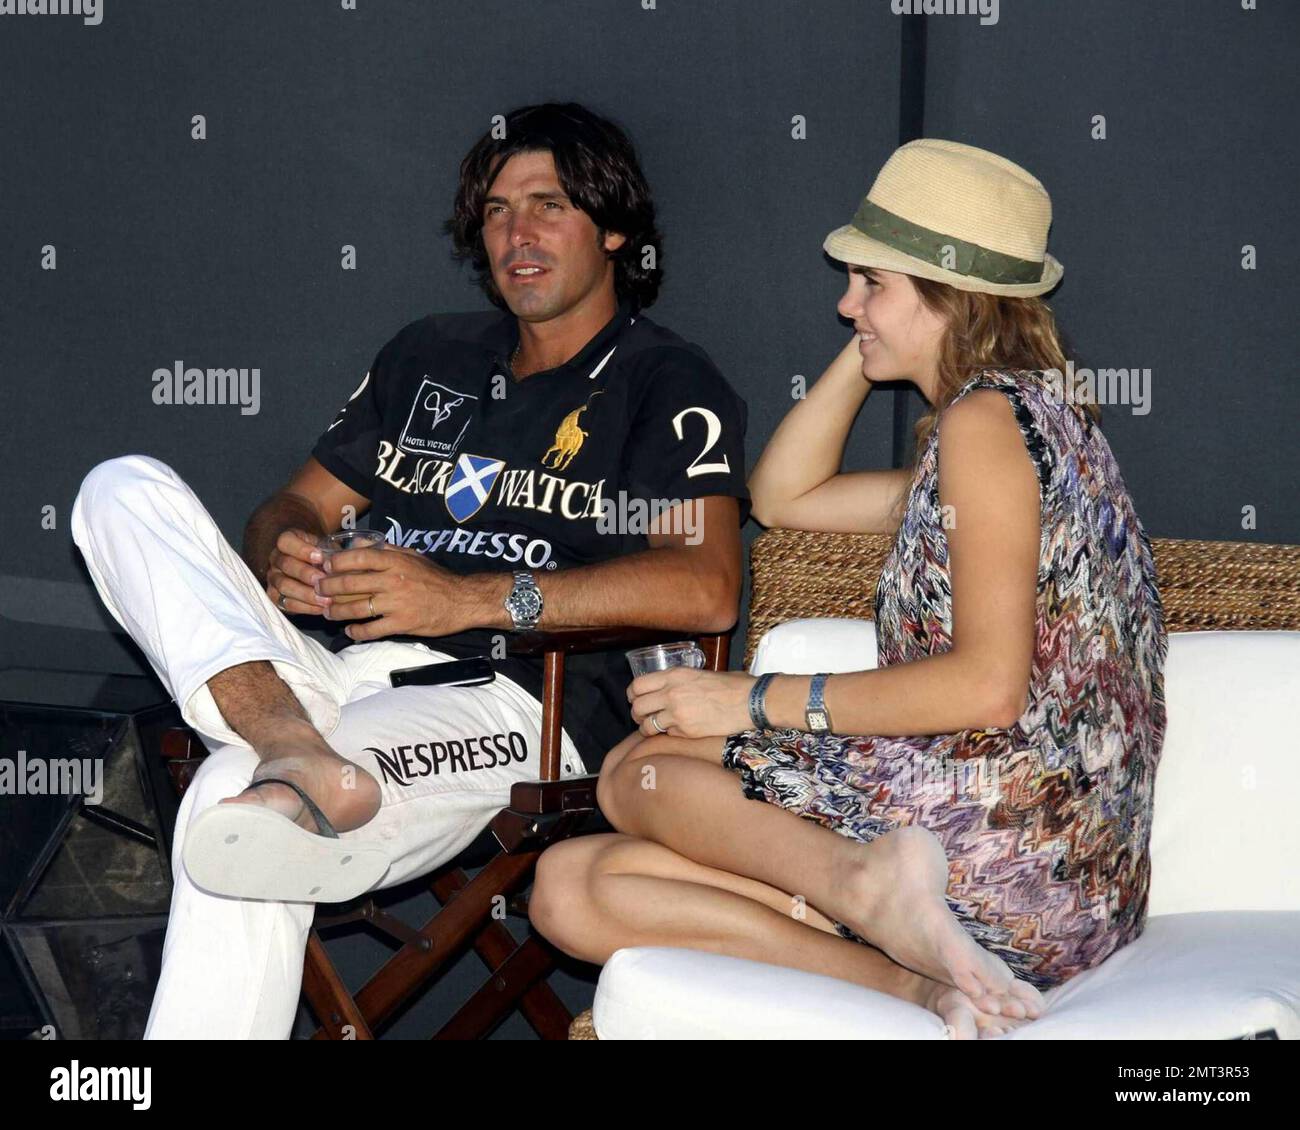 Nacho Figueras, Ralph Lauren modèle et membre de l'équipe de polo  BlackWatch, est rejointe par son épouse, Delfina Blaquier, tout en  participant à la coupe du monde de polo Miami Beach 2009